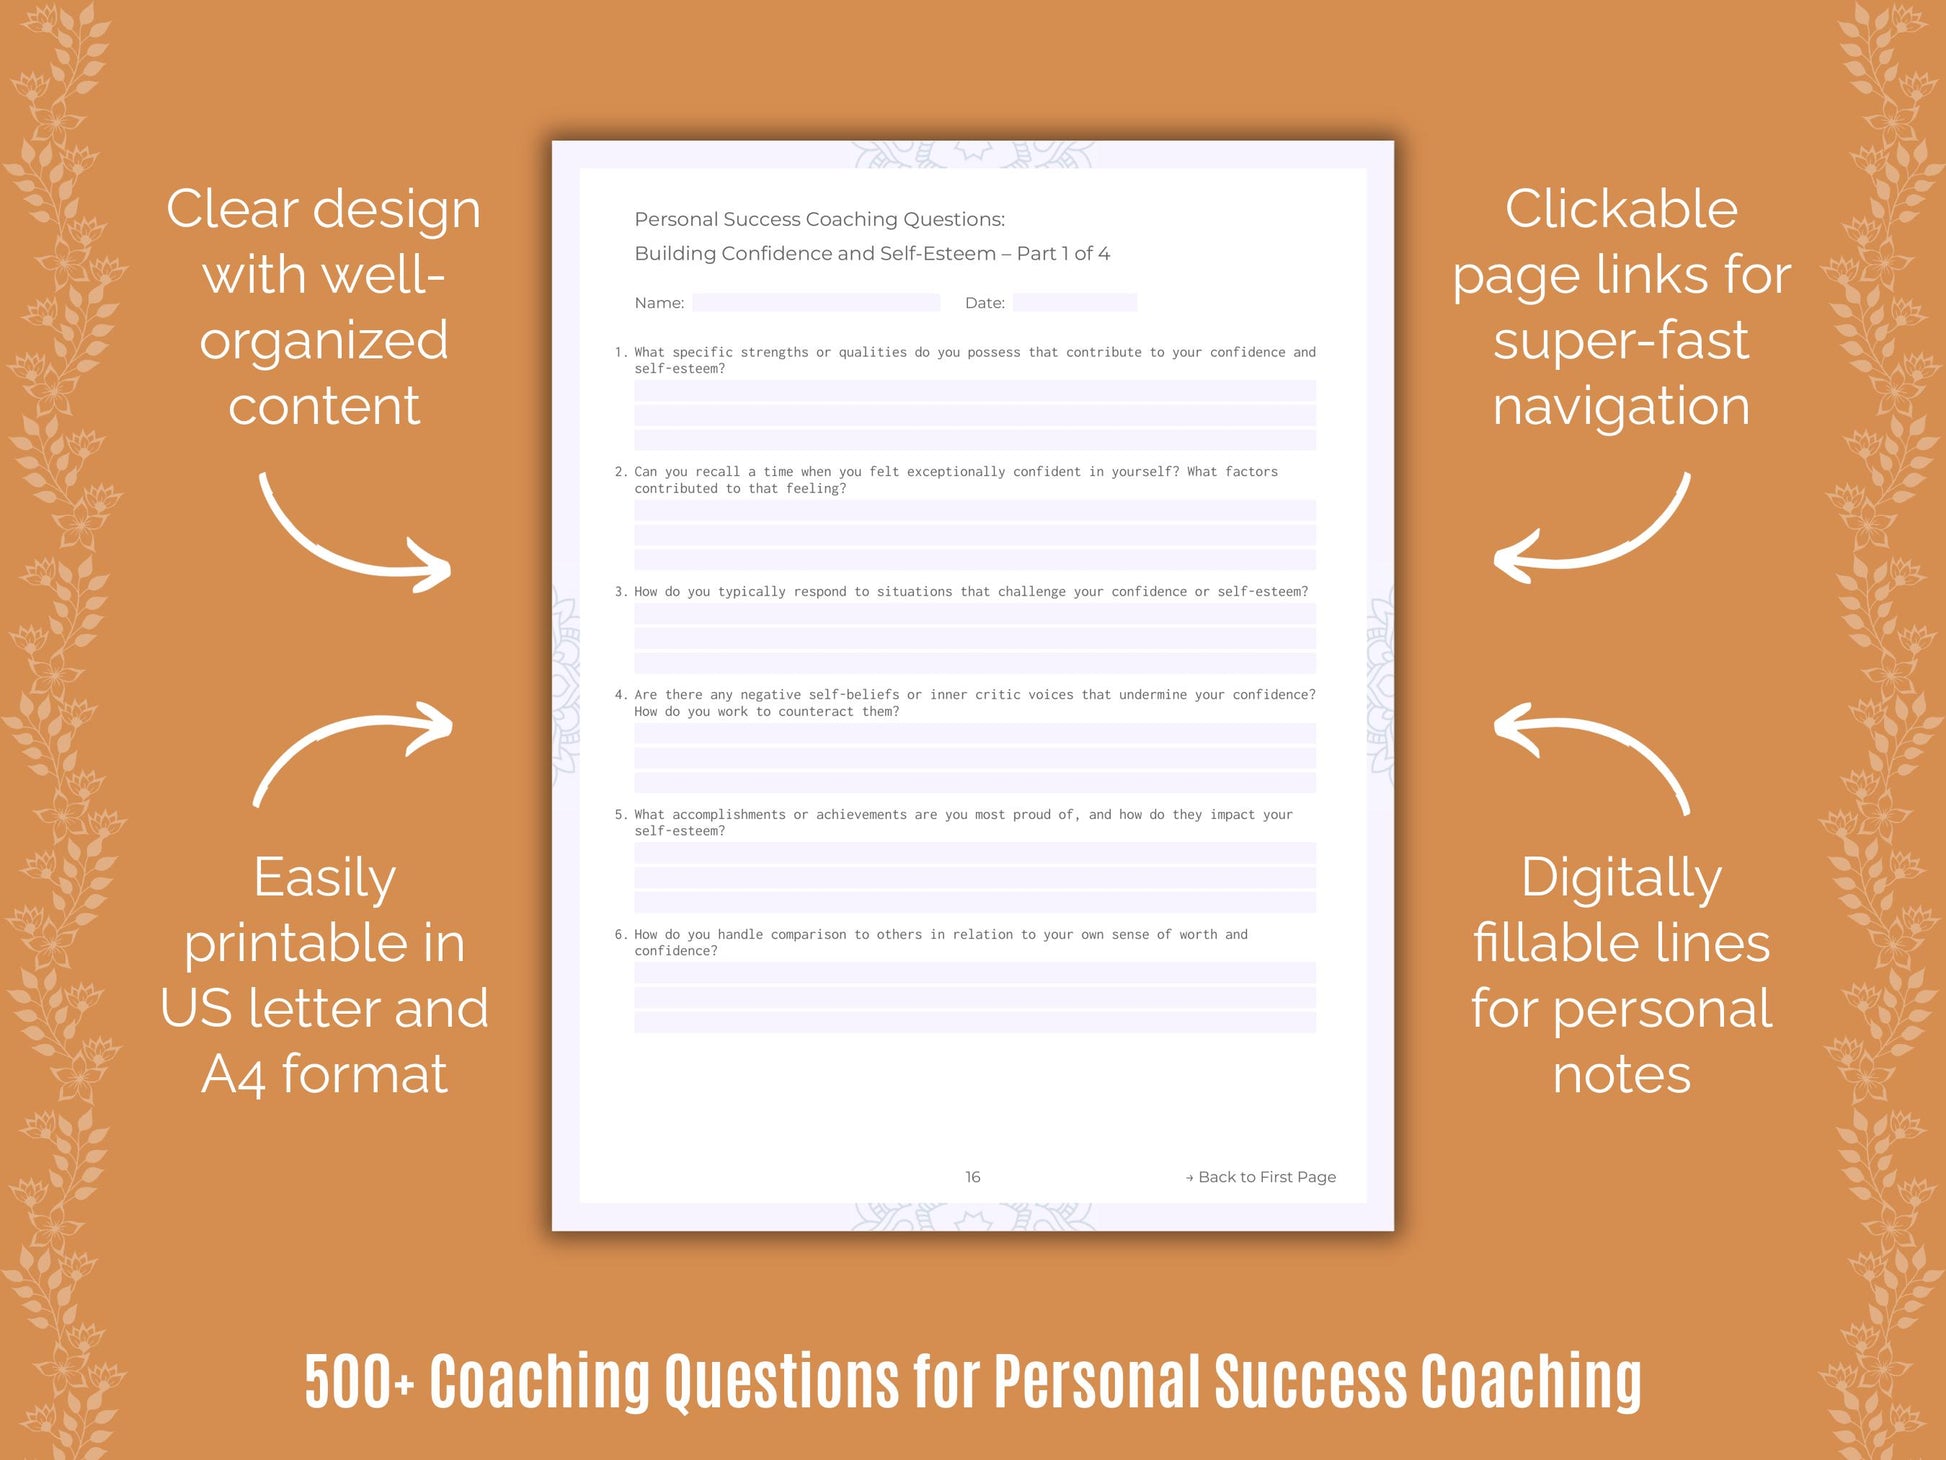 Personal Success Coaching